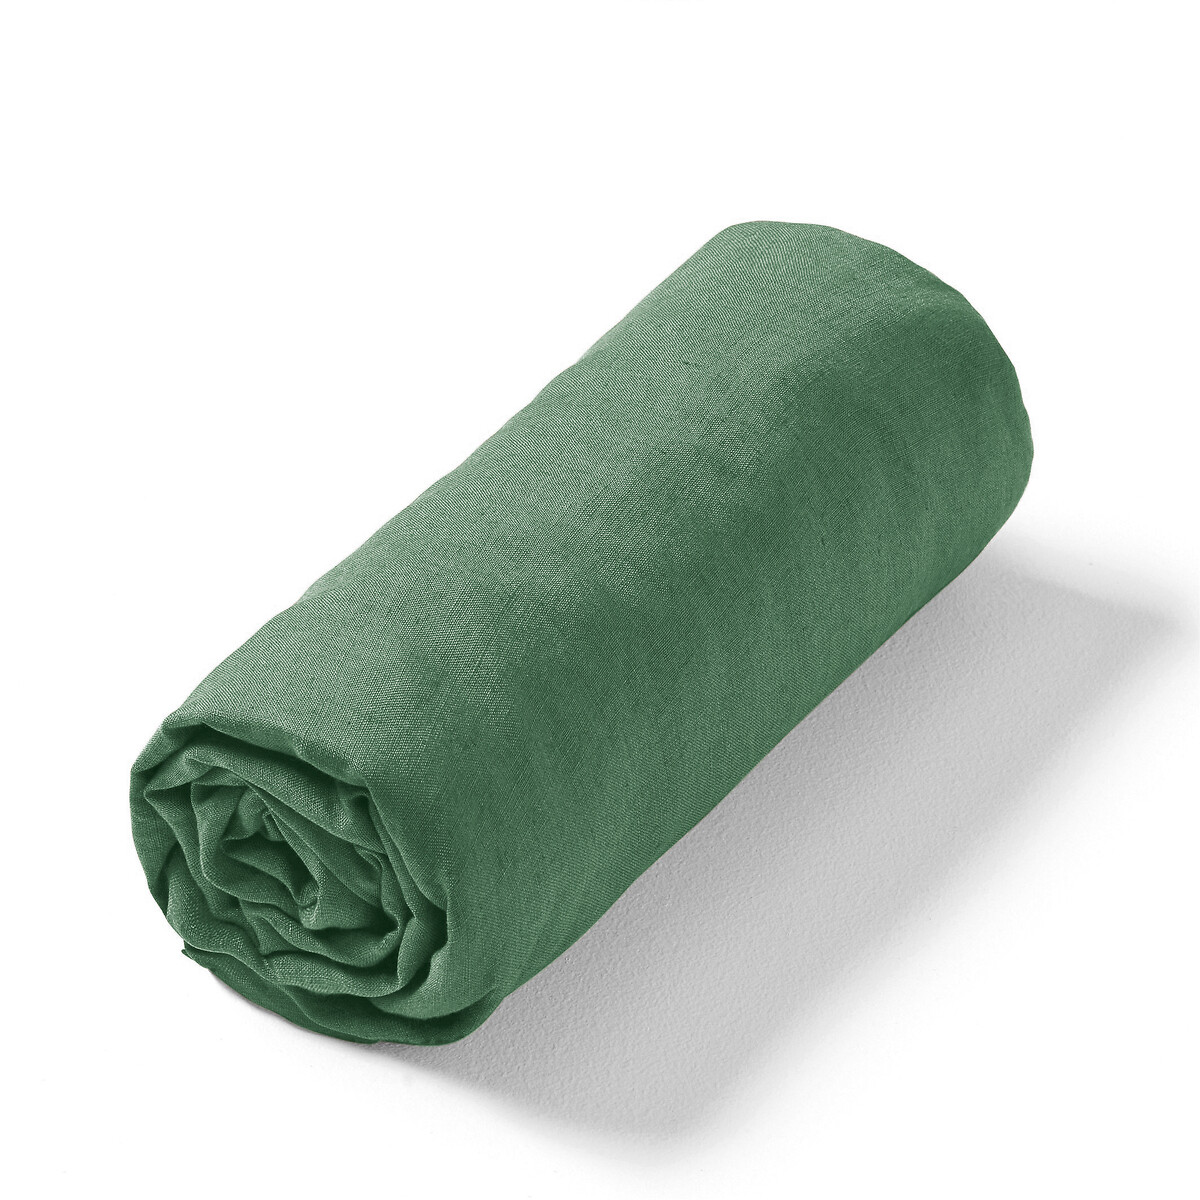 Простыня натяжная из стираного льна Elina для толстых матрасов 140 x 190 см зеленый простыня натяжная однотонная из стираного льна 160 x 200 см зеленый